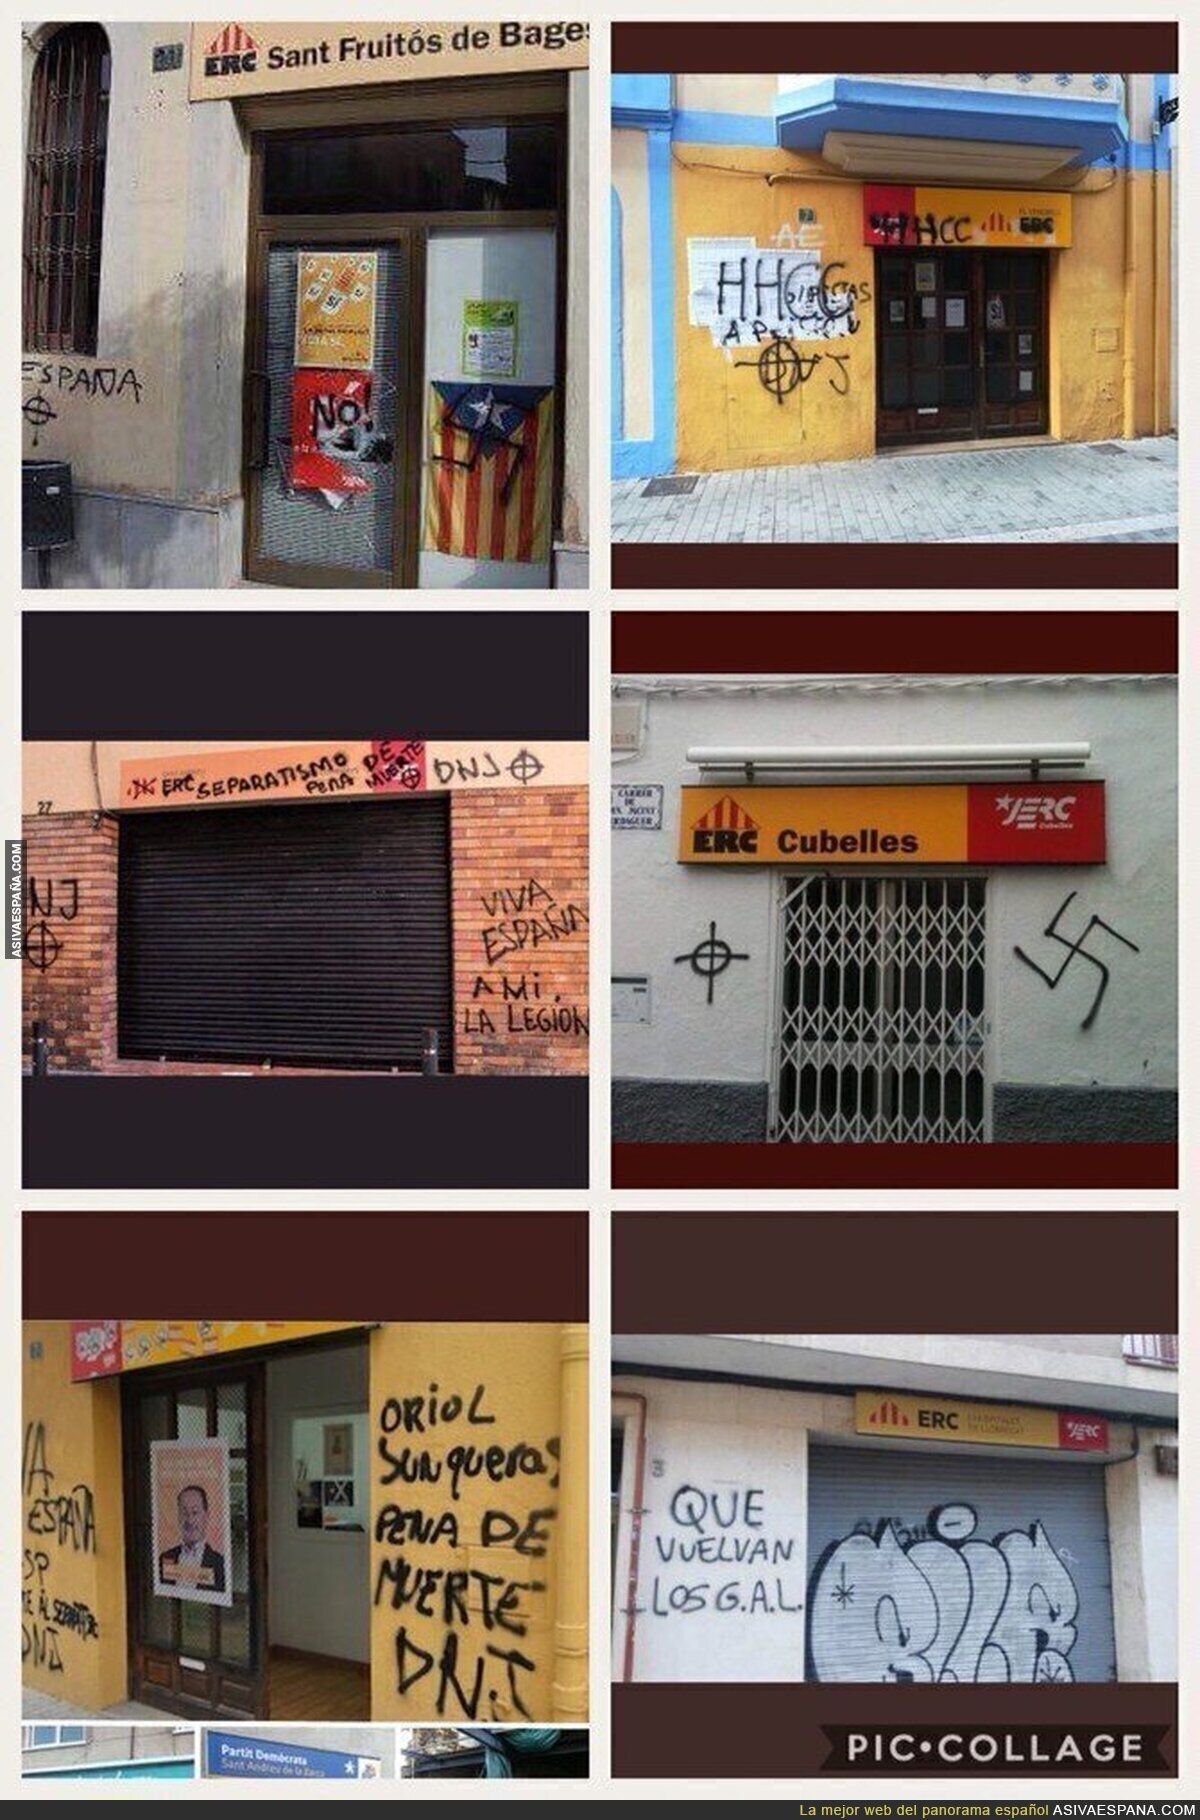 El tapado asedio neonazi a los independentistas catalanes